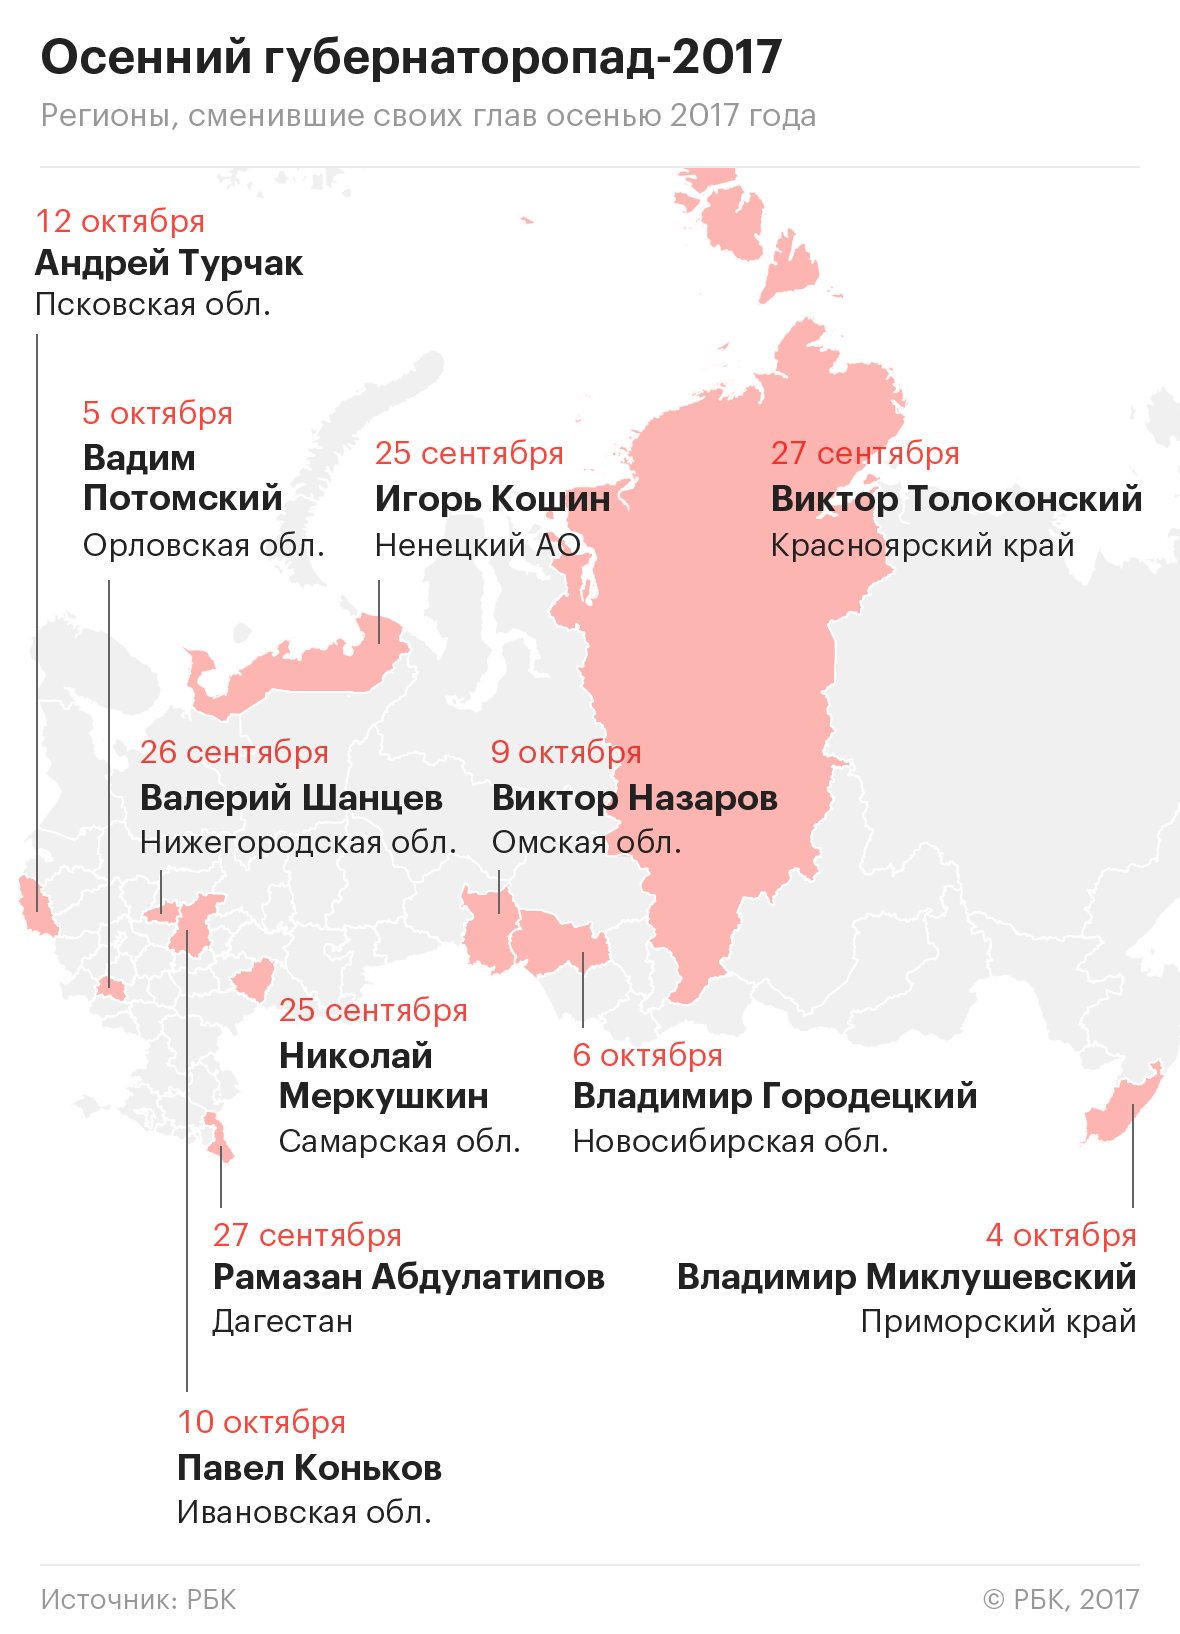 Повышение в «тяжелый регион»: кто стал новым псковским губернатором